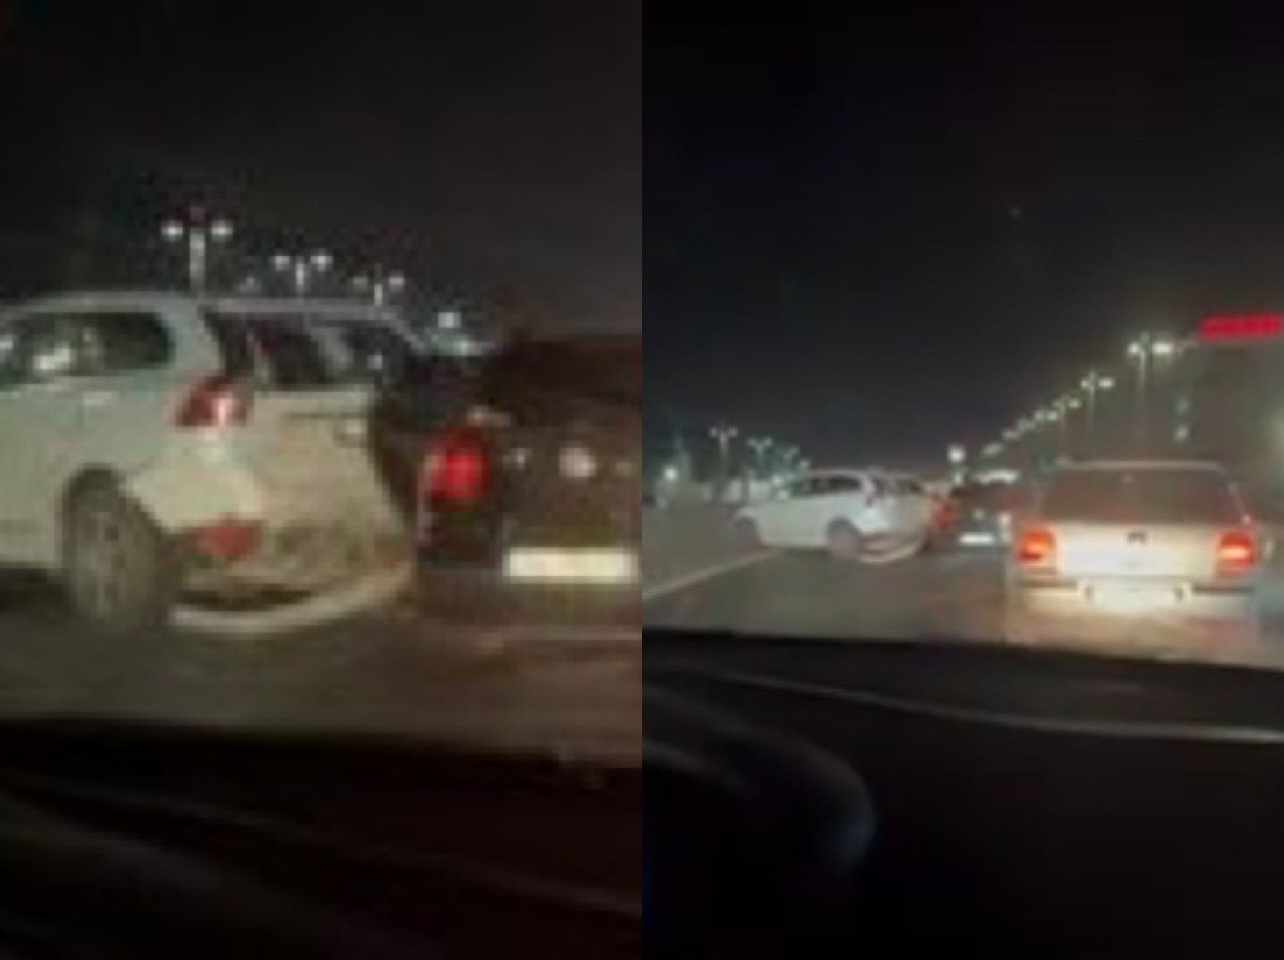 VIDEOLAJM/ Aksident në autostradën Tiranë-Durrës, përplasen disa automjete